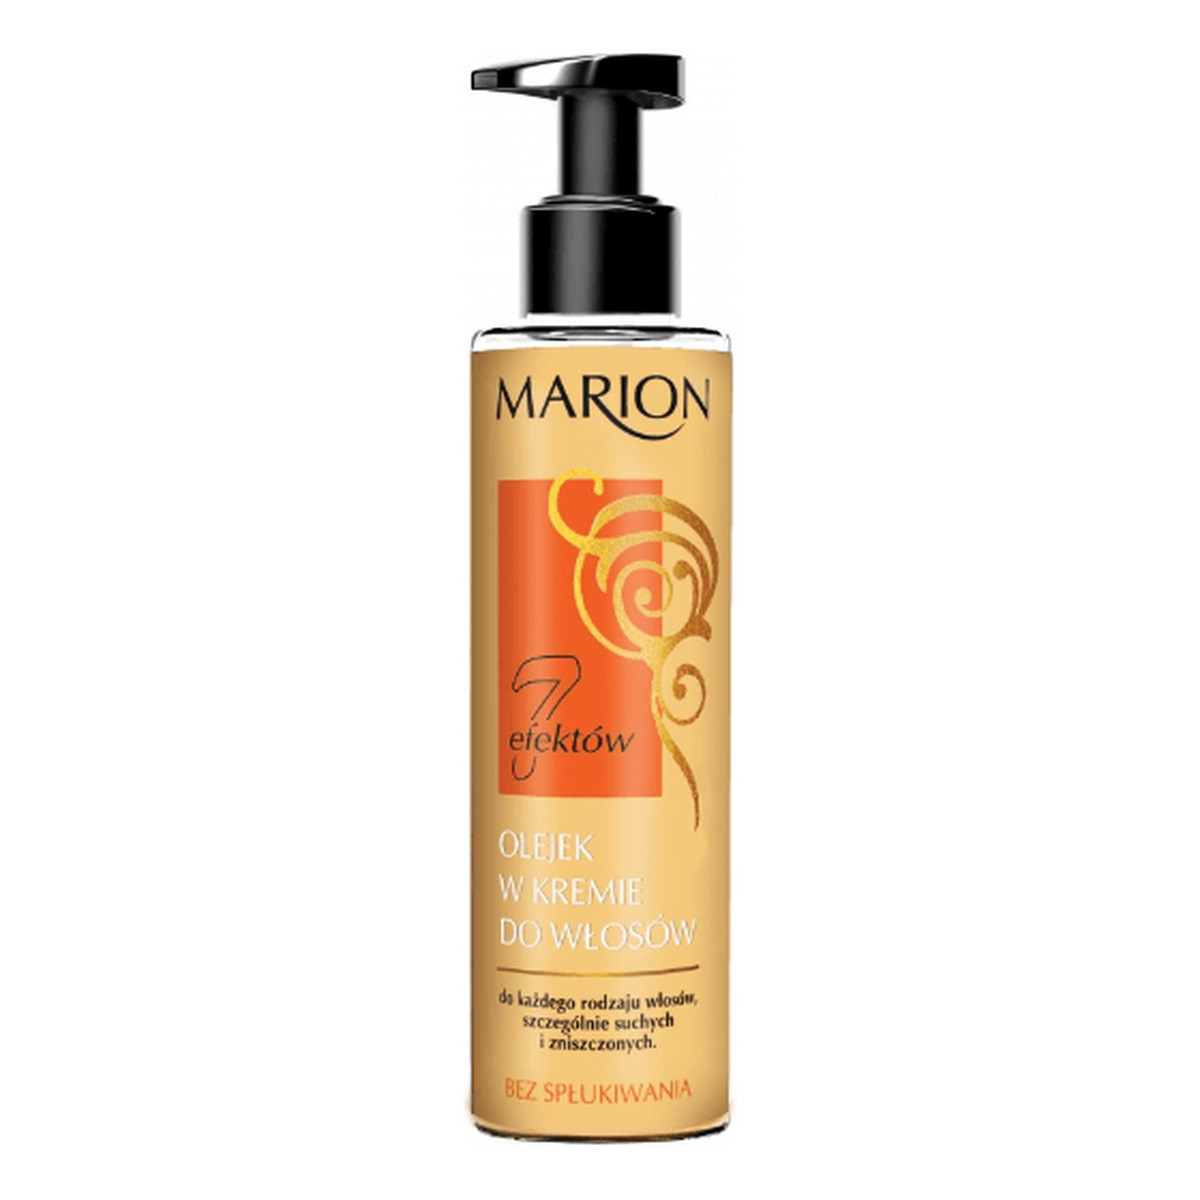 Marion 7 Efektów olejek w kremie do włosów 150ml